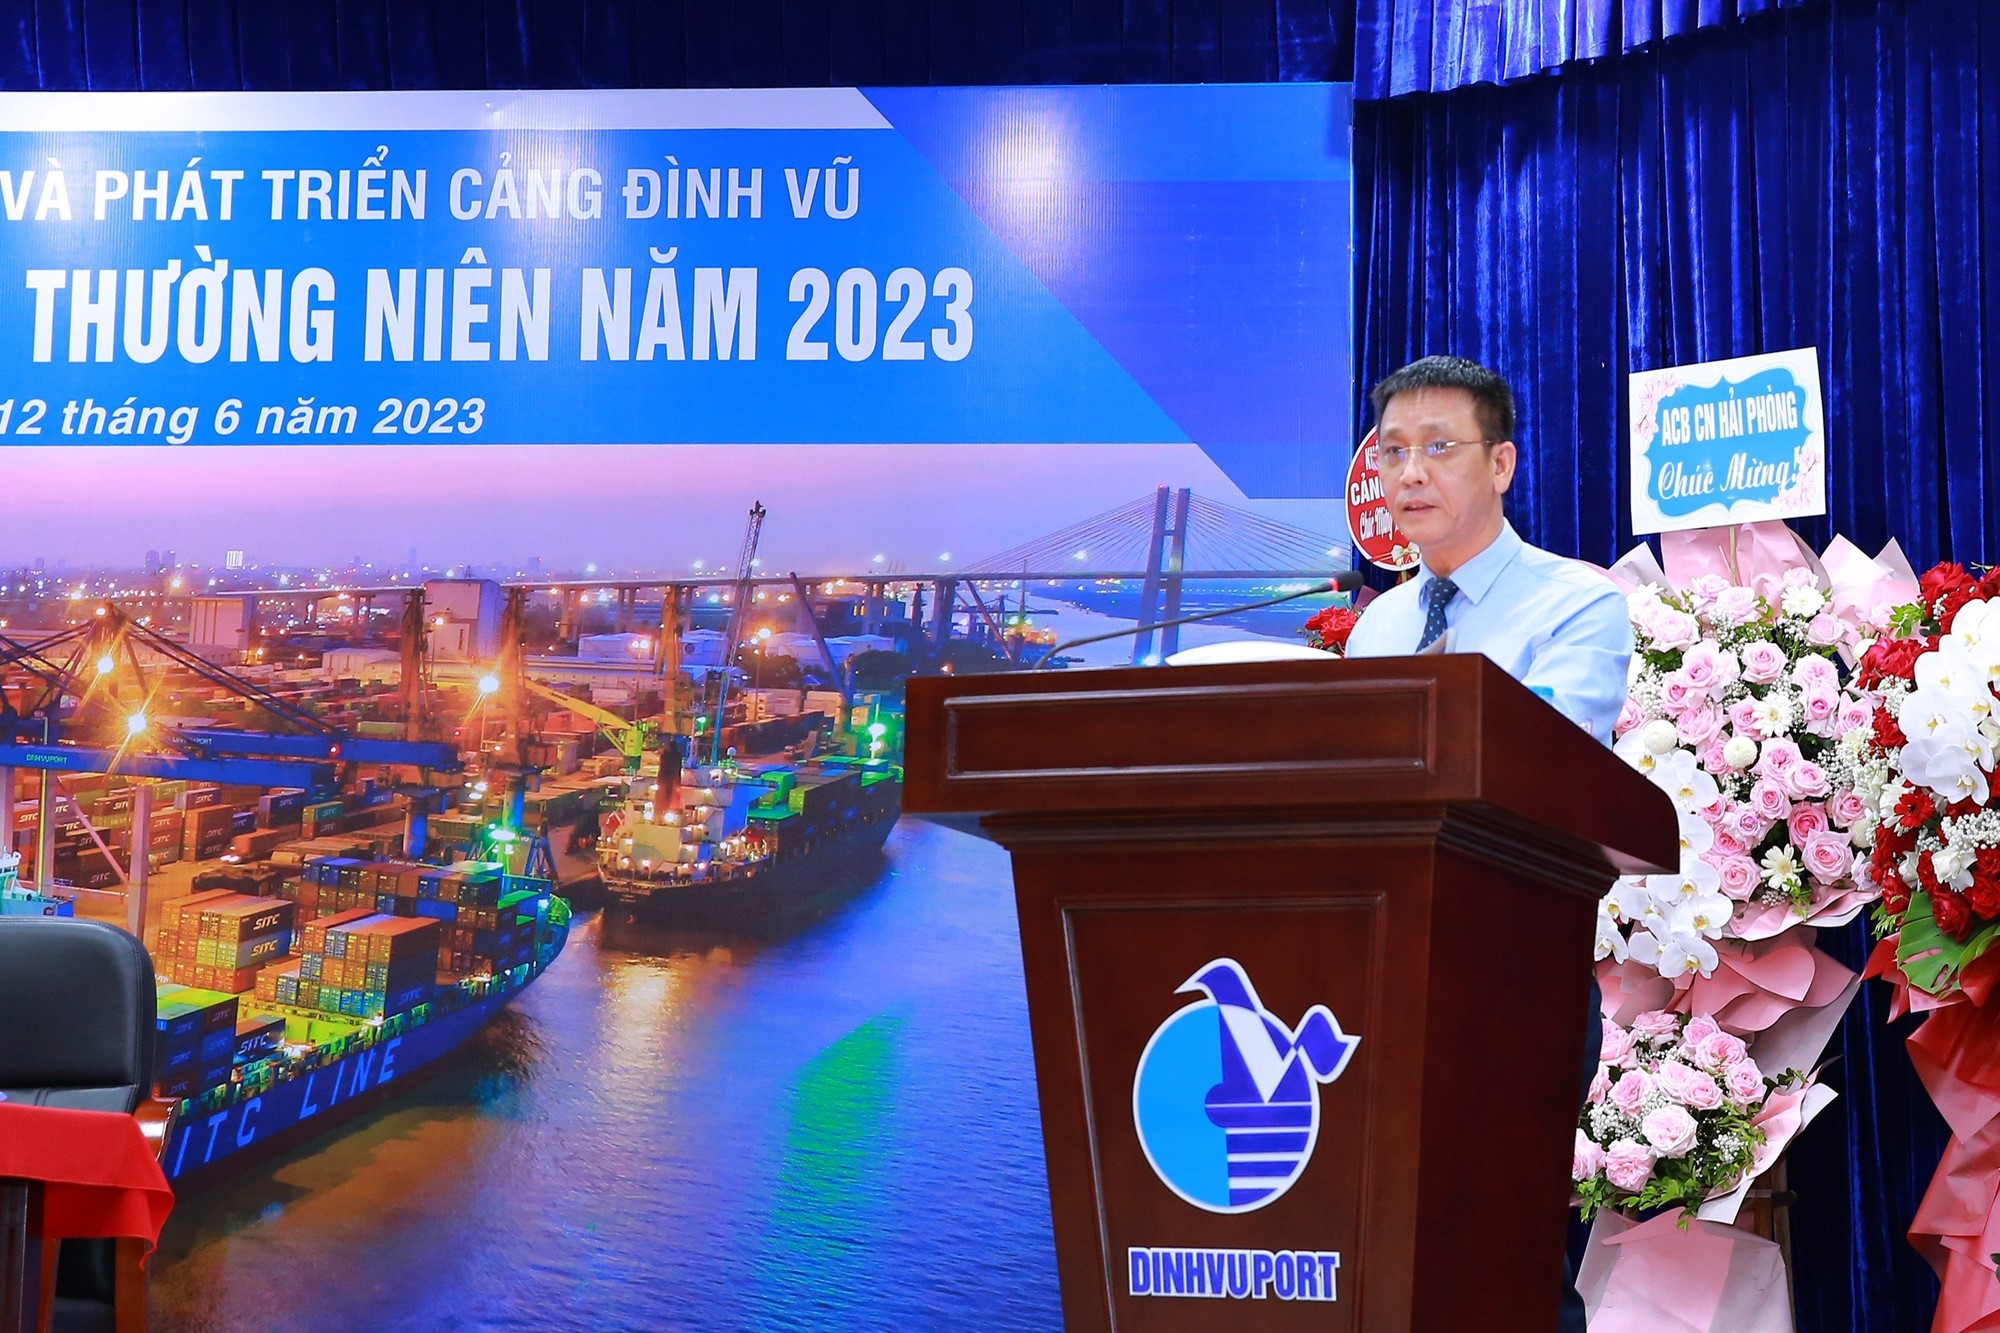 Ông Nguyễn Nam Hải thay mặt BTC tuyên bố lý do, giới thiệu đại biểu